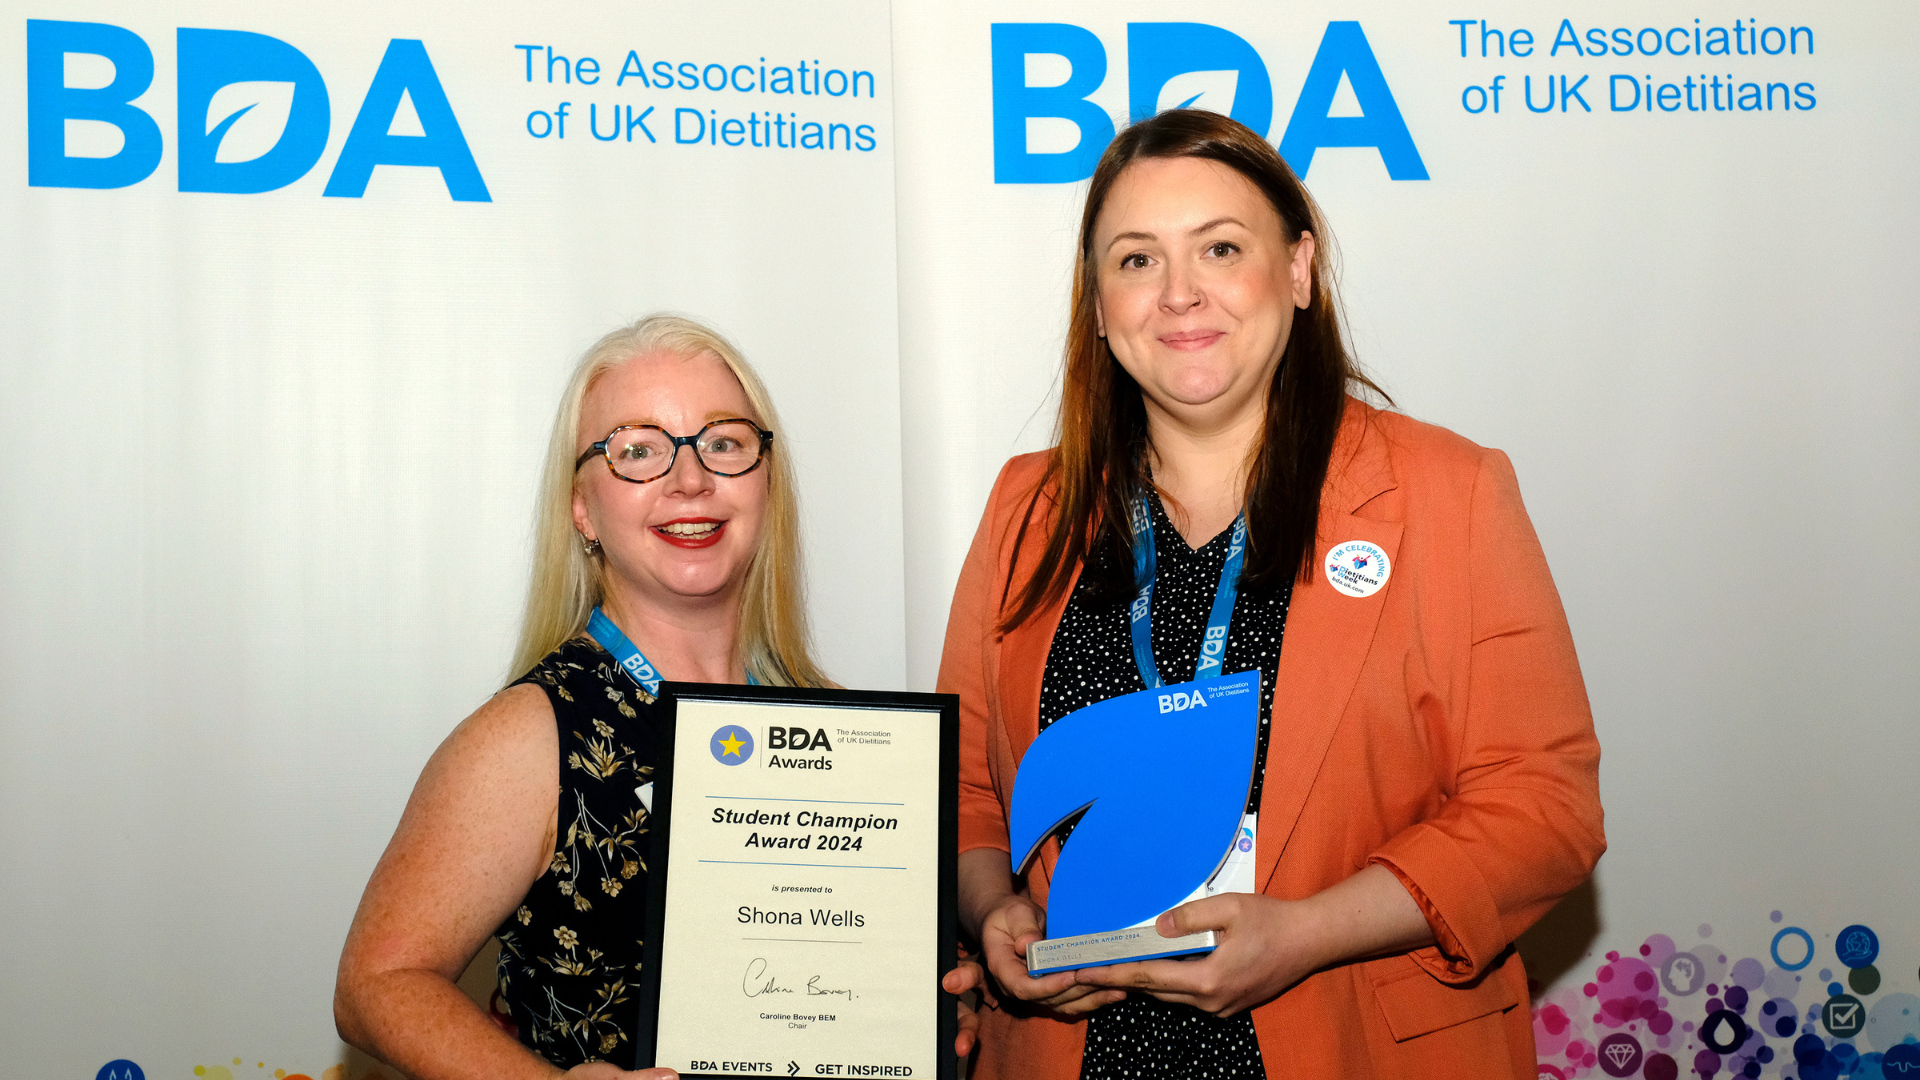 BDA Awards 2024 Shona Wells, Newcastle University